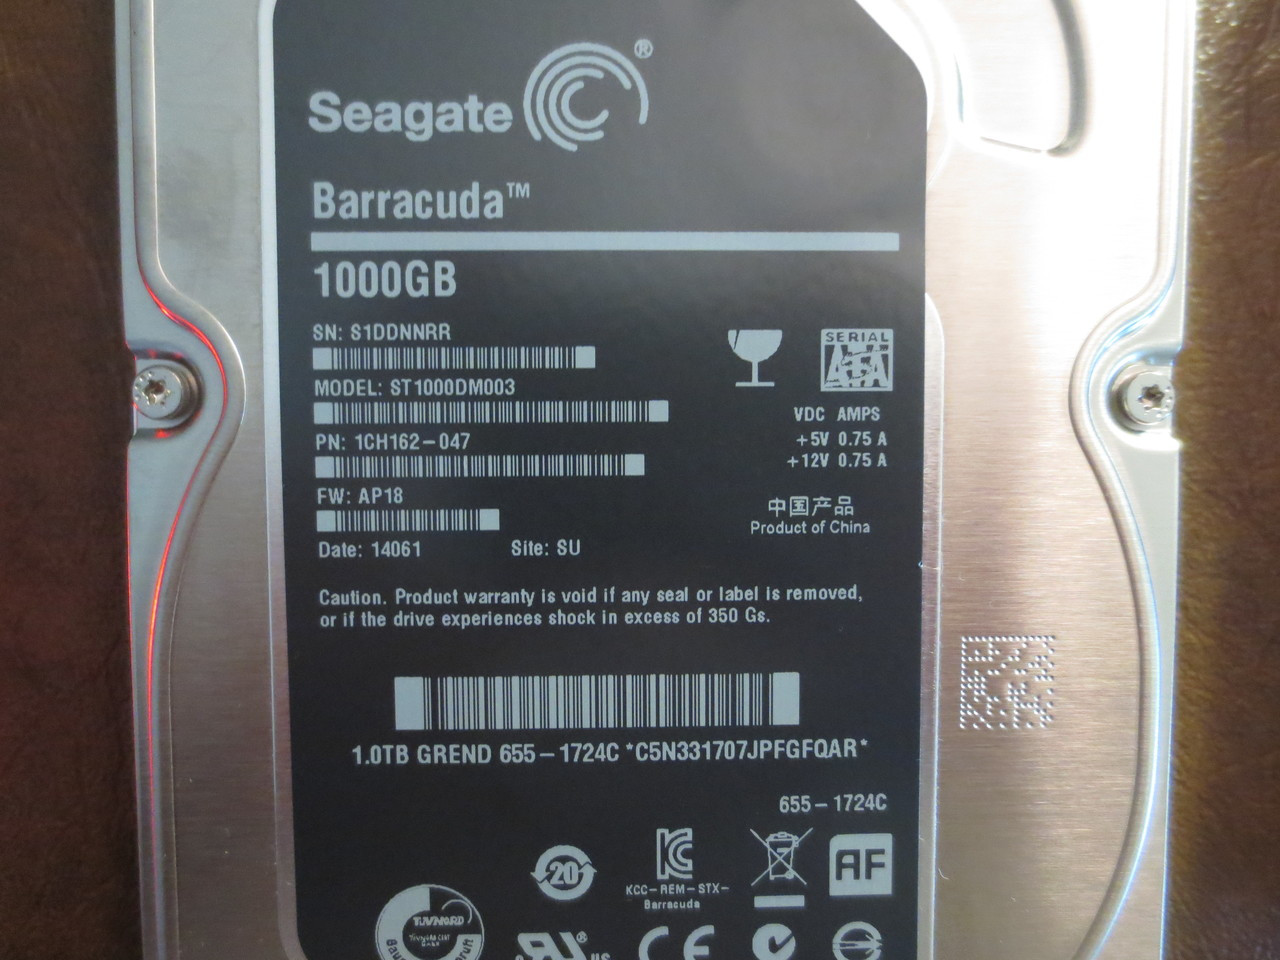 Seagate ST1000DM003 1ER162-040 FW:AP14 SU Apple#655-1724F 1.0TB 3.5" Sata HDD 